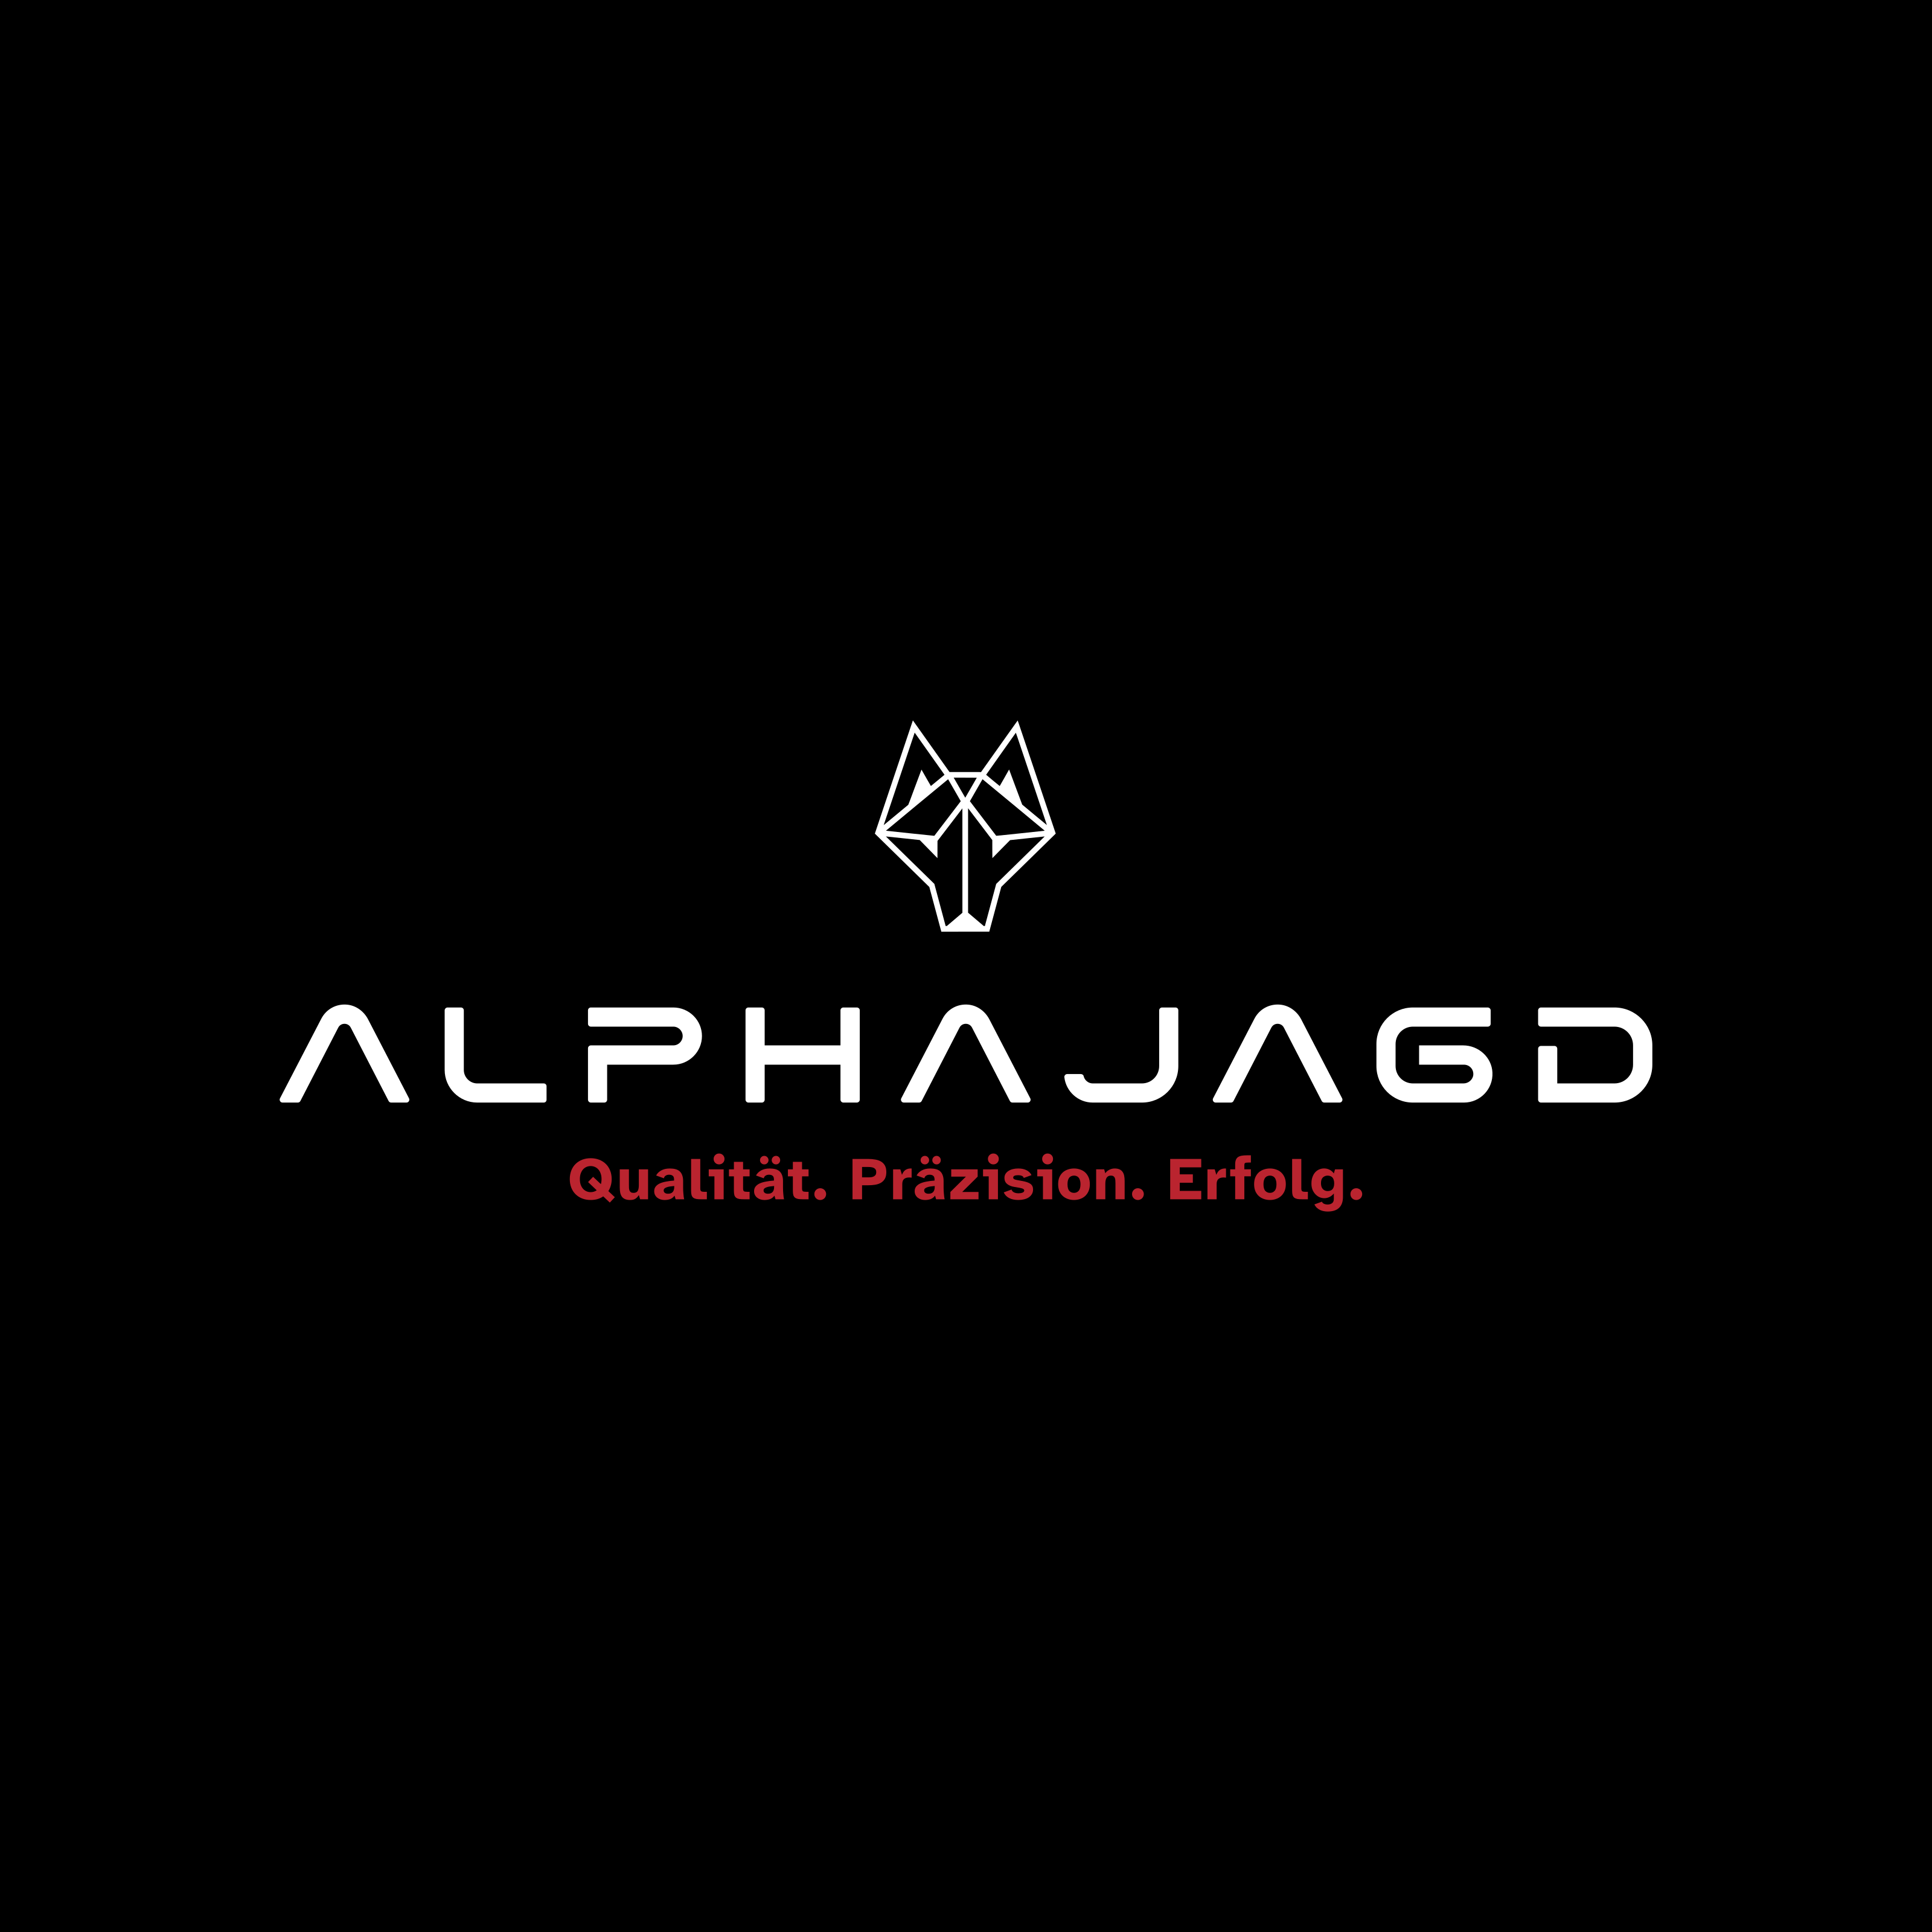 (c) Alphajagd.de